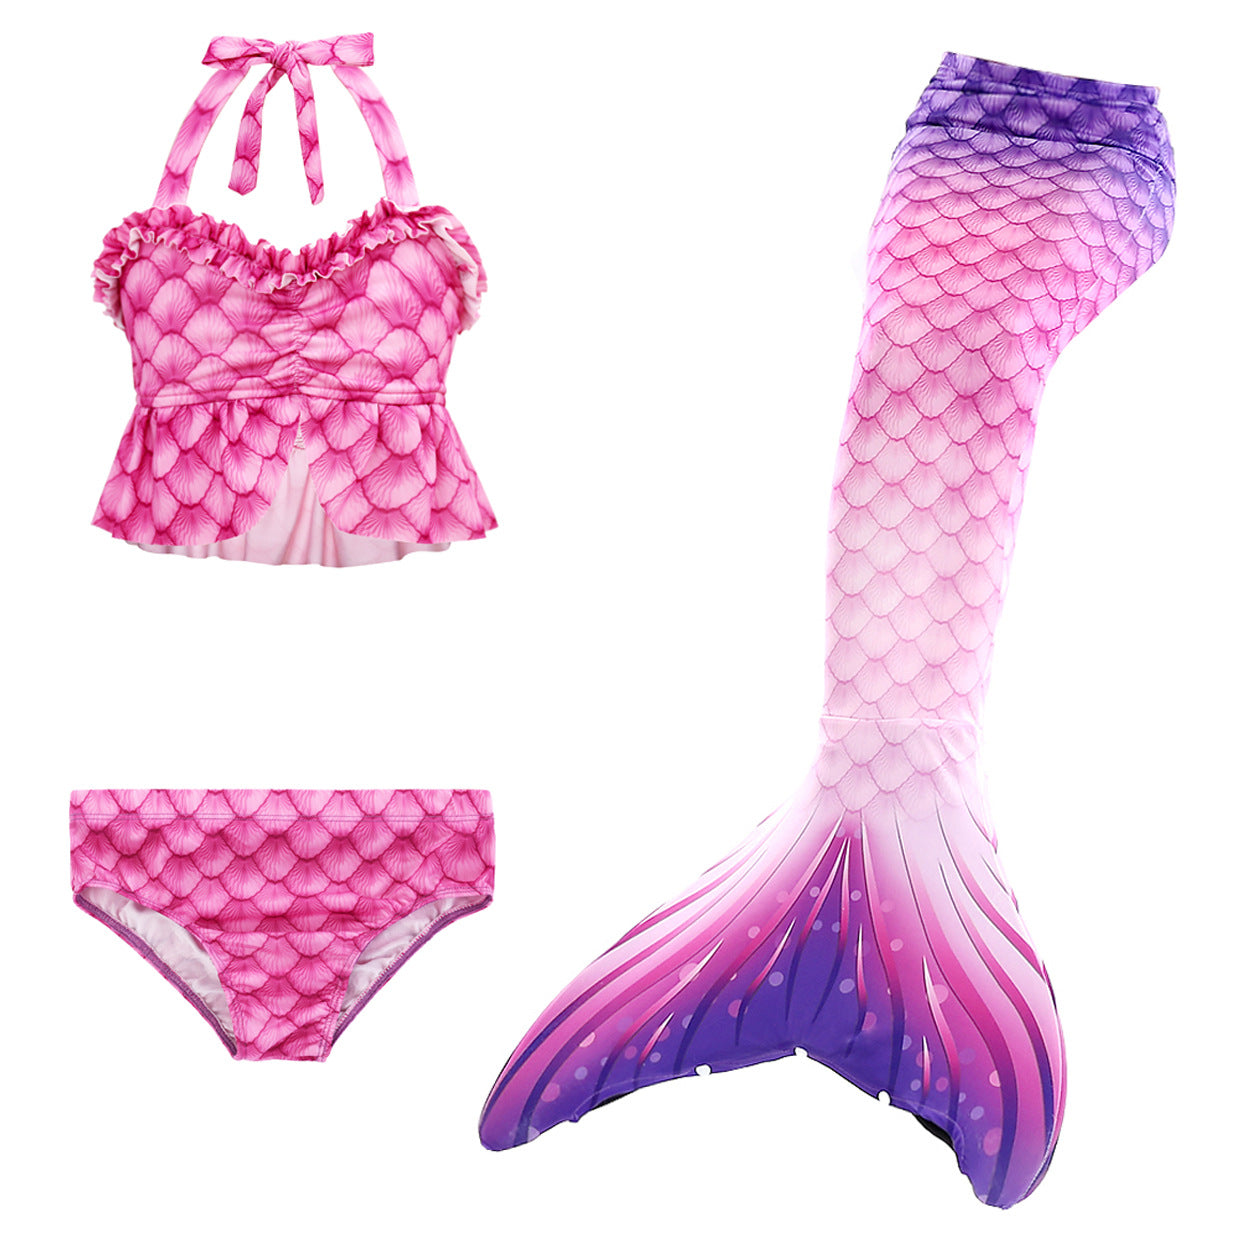 mermaid top,  mermaid outfit,  mermaid inspired outfits, mermaid crown, mermaid costume,  little mermaid